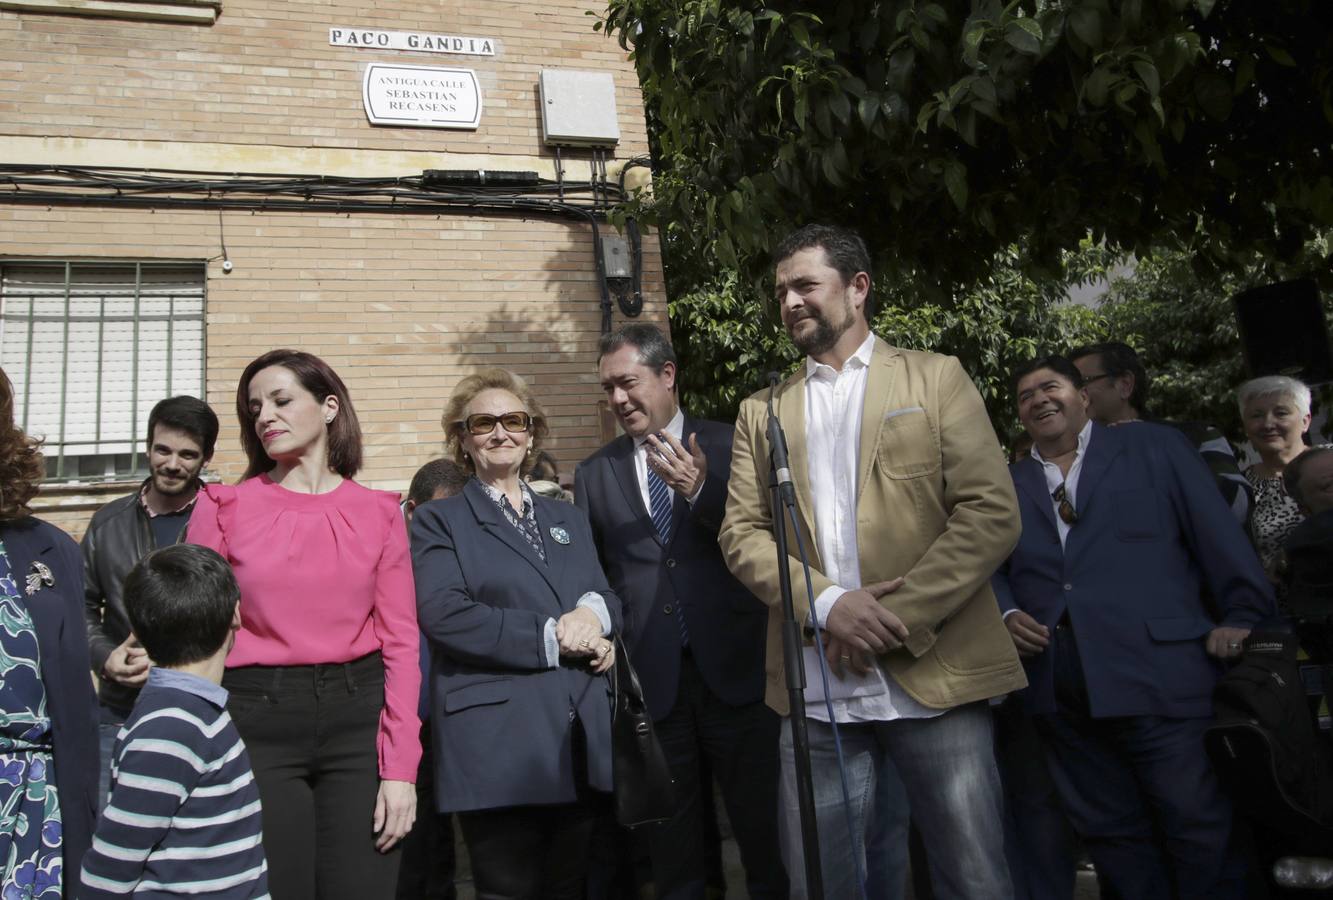 Paco Gandía ya tiene calle en Sevilla